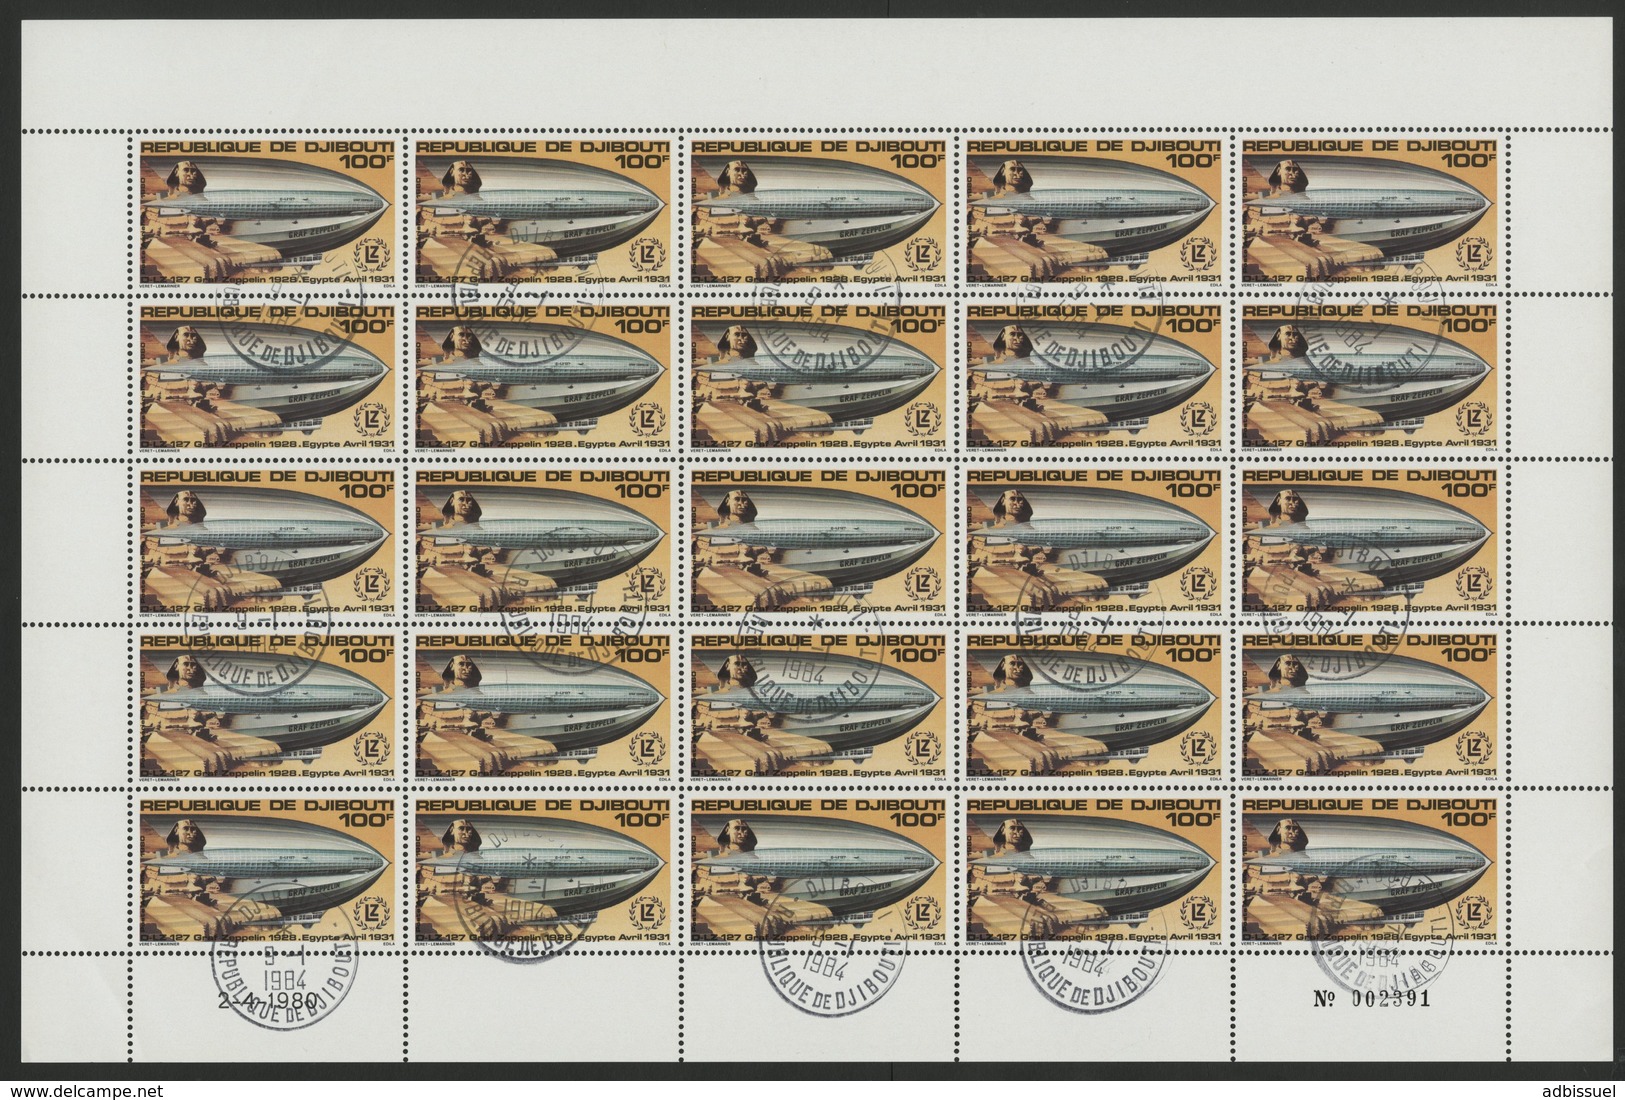 DJIBOUTI POSTE AERIENNE COTE 50 € N° 144 ET 145 SERIE DE 2 FEUILLES COMPLETES DE 25 EXEMPLAIRES. ZEPPELIN - Zeppelins